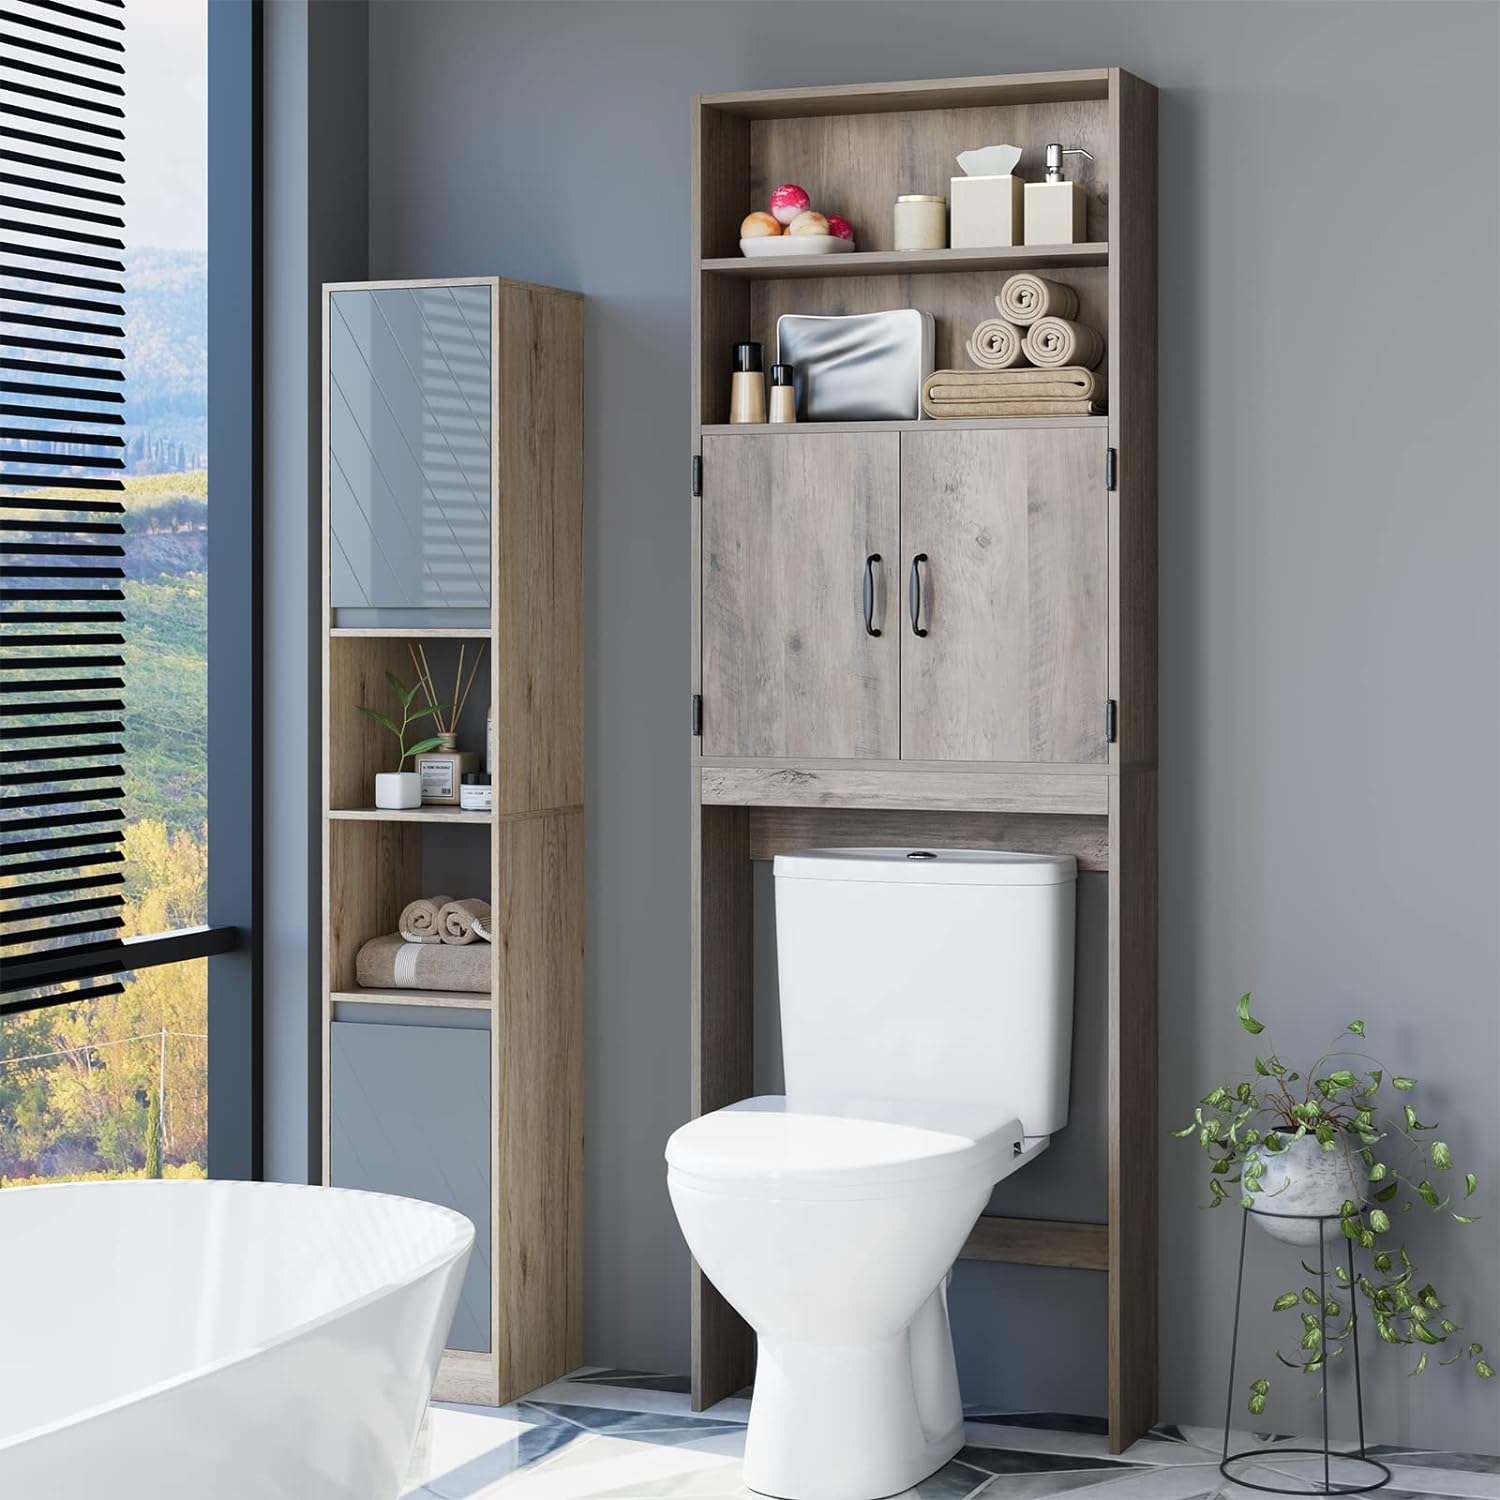 WATERJOY Sobre el inodoro - Mueble organizador de armario de baño con 2  puertas de vidrio templado Moru, estante de inodoro que ahorra espacio,  color